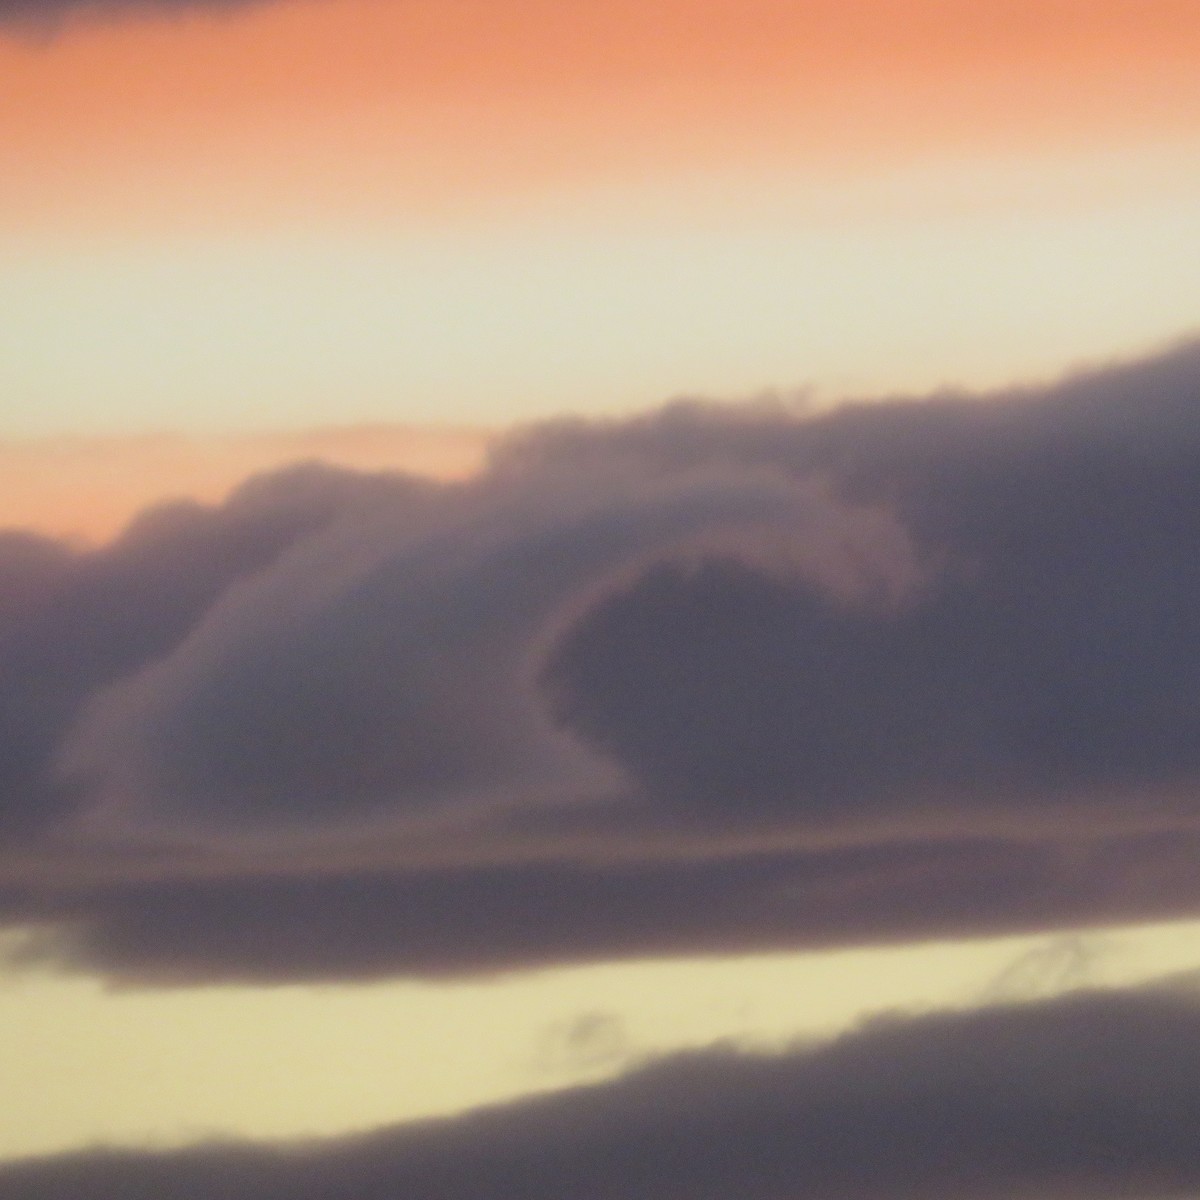 Kelvin-Helmholtz wave cloud